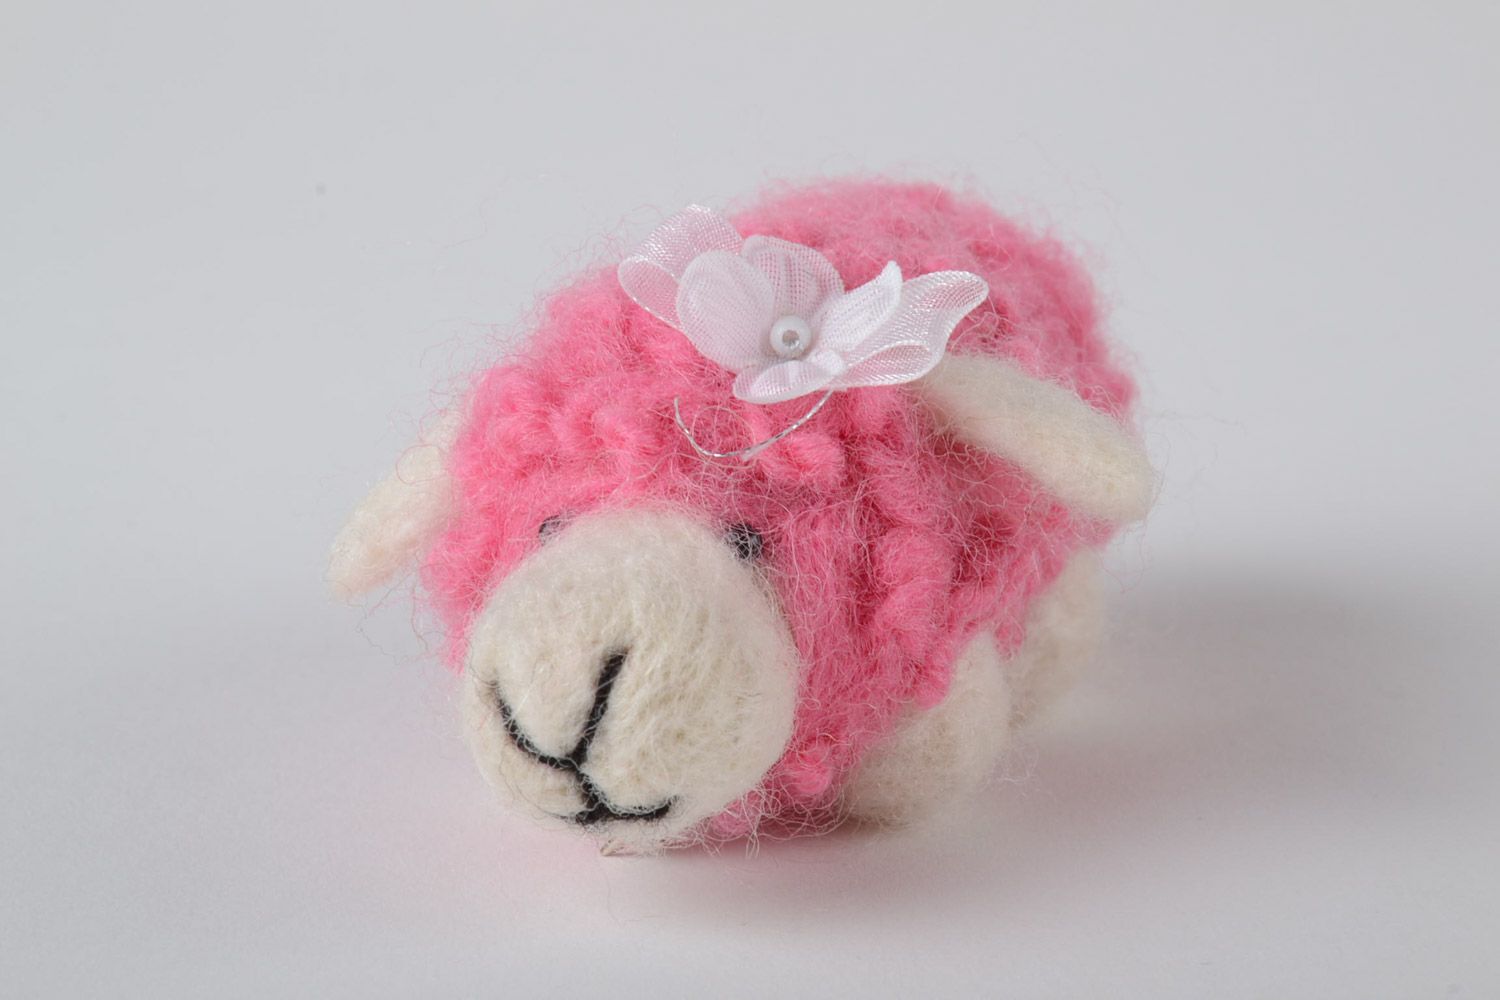 Игрушка в технике валяния овечка миниатюрная розовая с белым красивая хенд мэйд фото 4